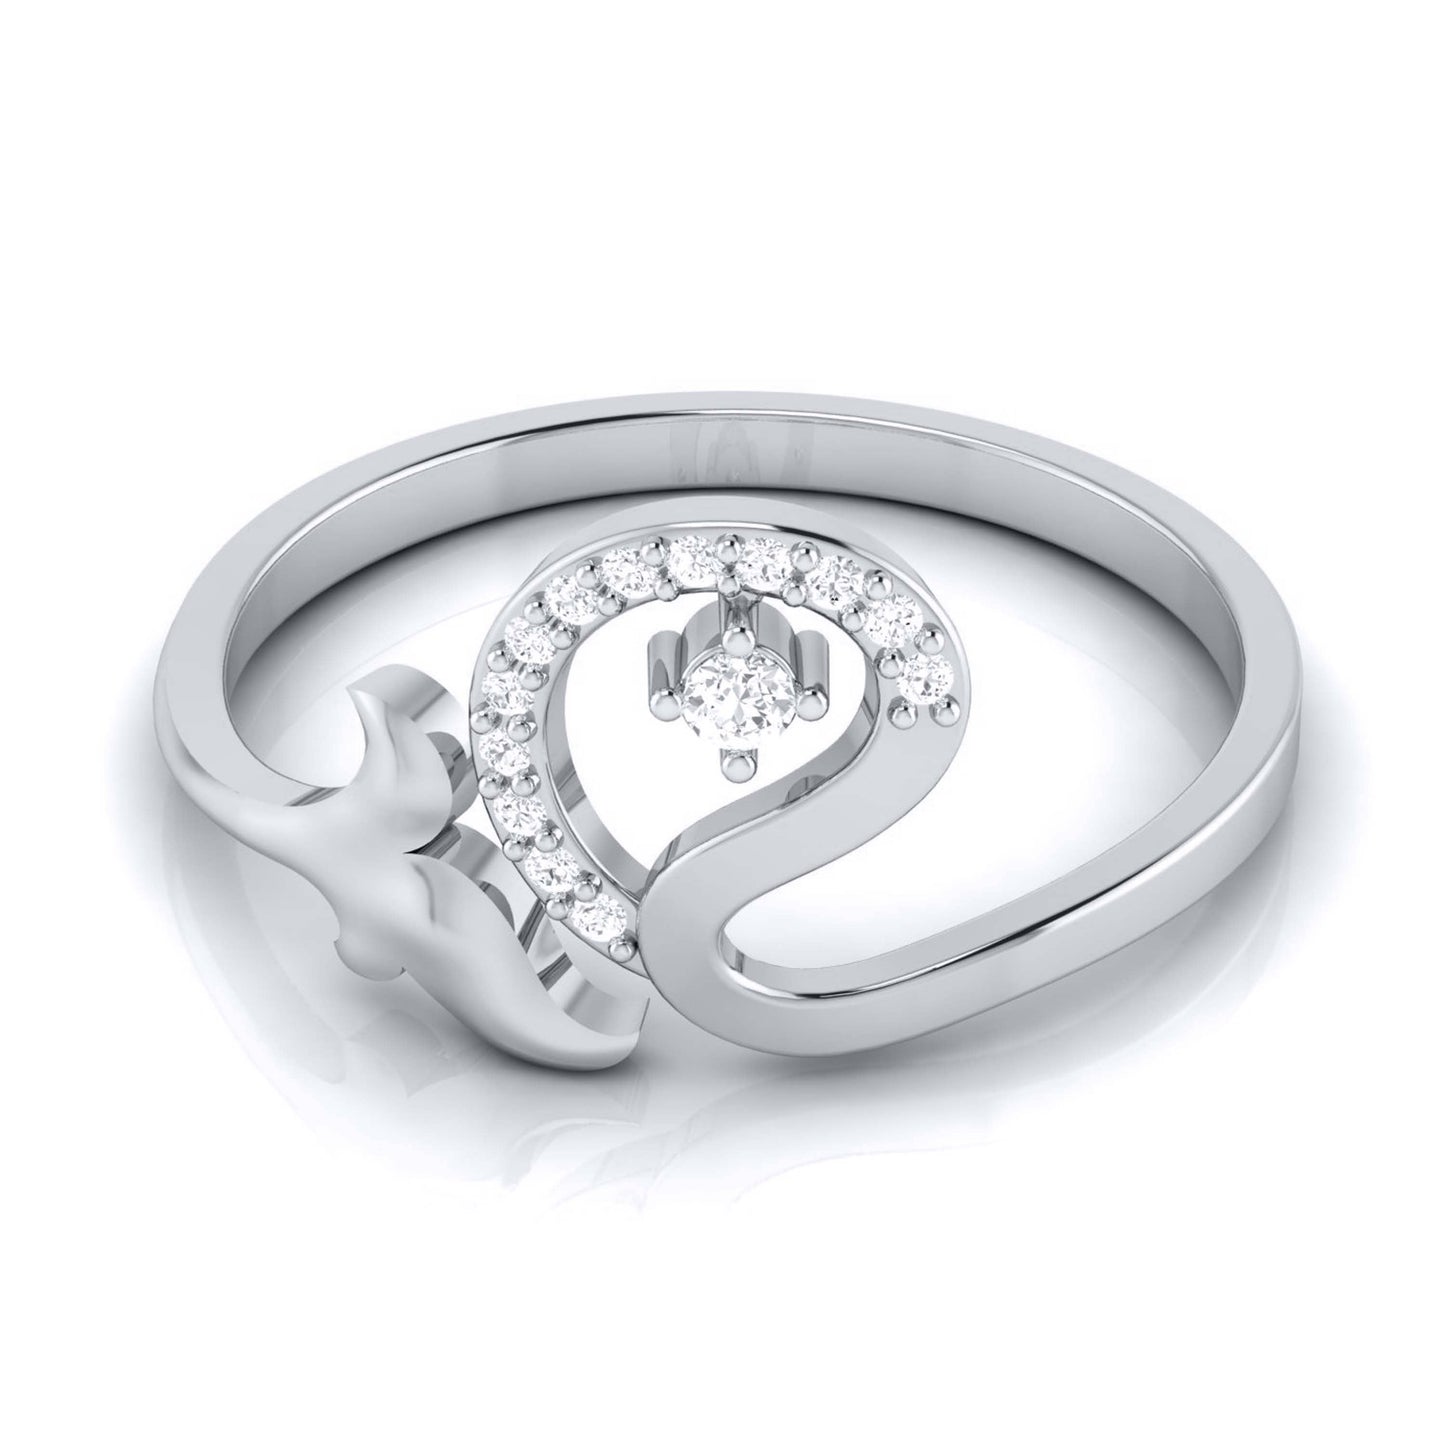 Nucleus lab grown diamond ring sleek ring Fiona Diamonds